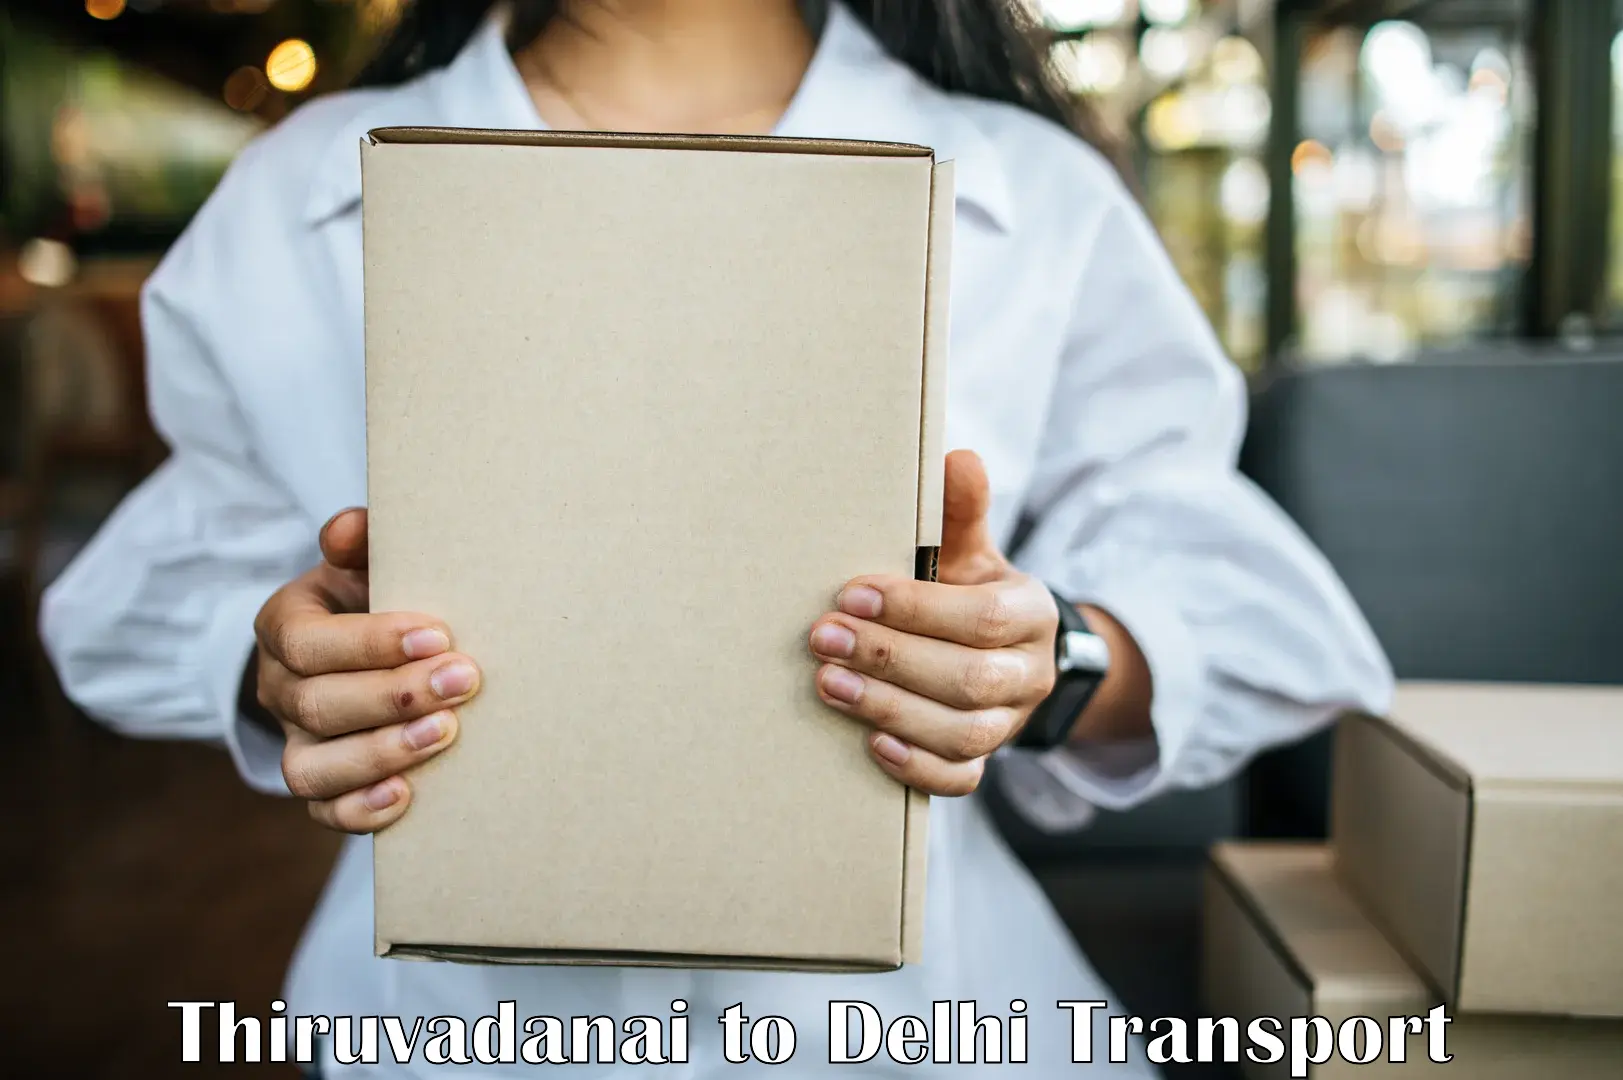 Shipping services Thiruvadanai to IIT Delhi